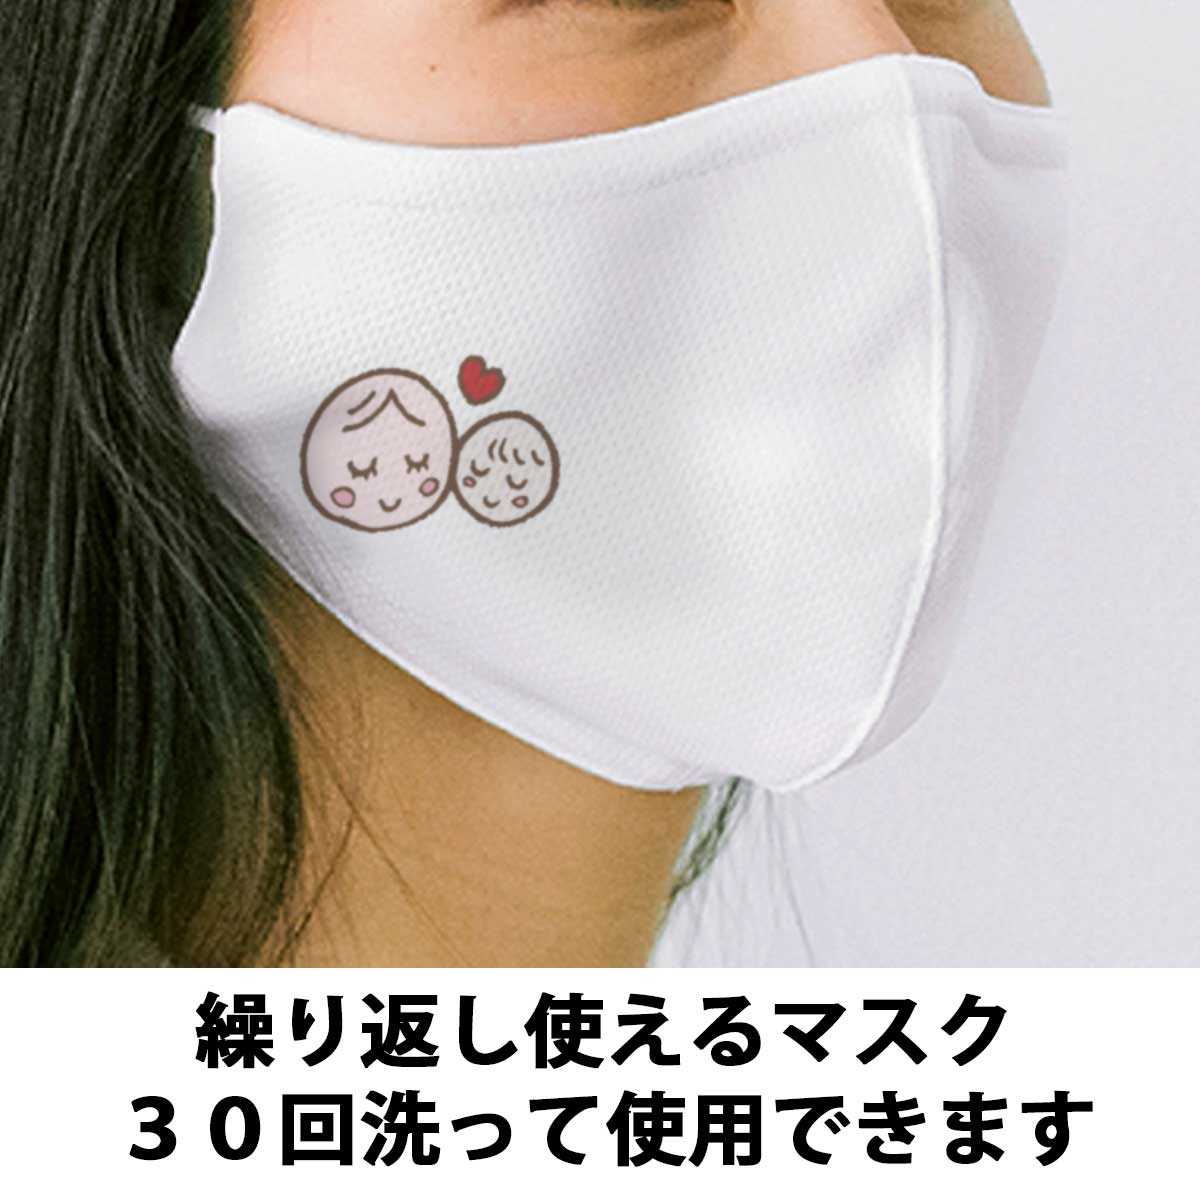 【即納可能】1枚から作れる 自分でデザイン オリジナル 洗えるマスク 3層構造 抗菌 耐水 UVカット 大人用サイズ